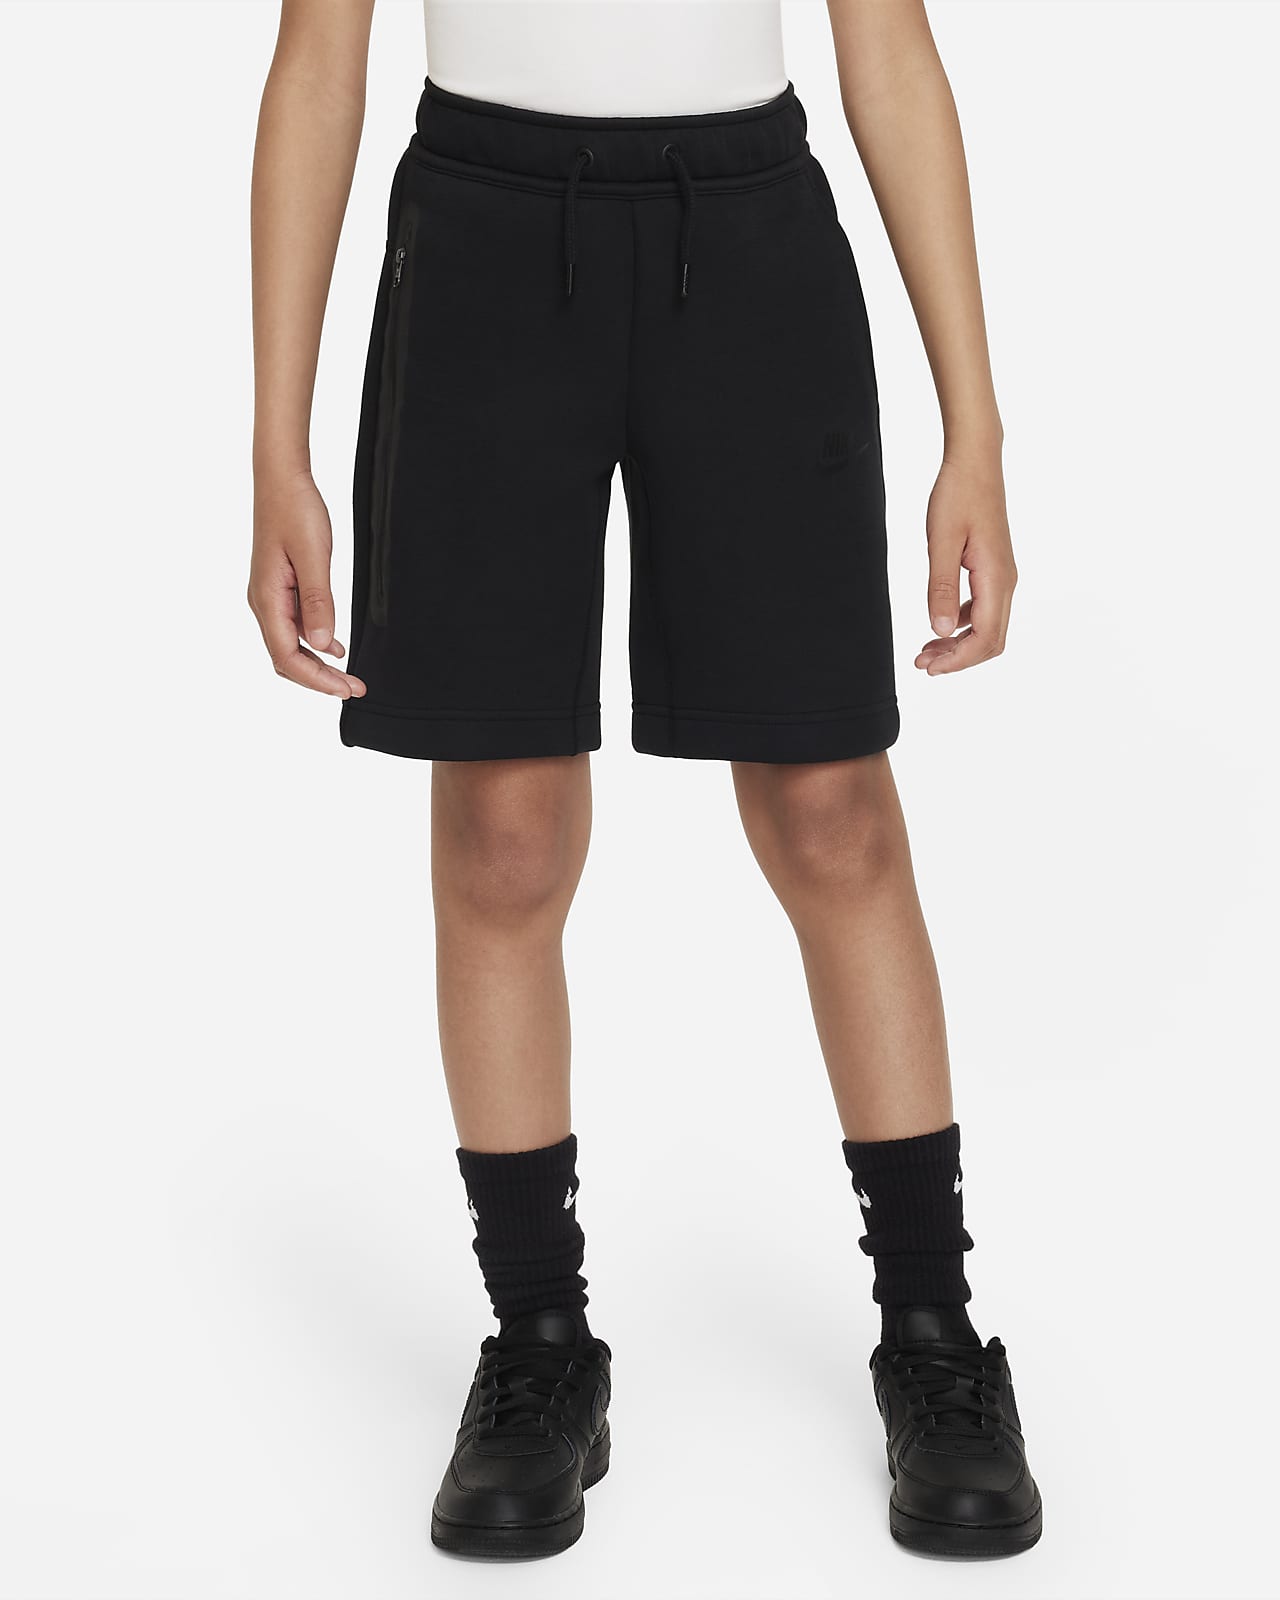 Nike Tech Fleece Big Kids' (Boys') Shorts